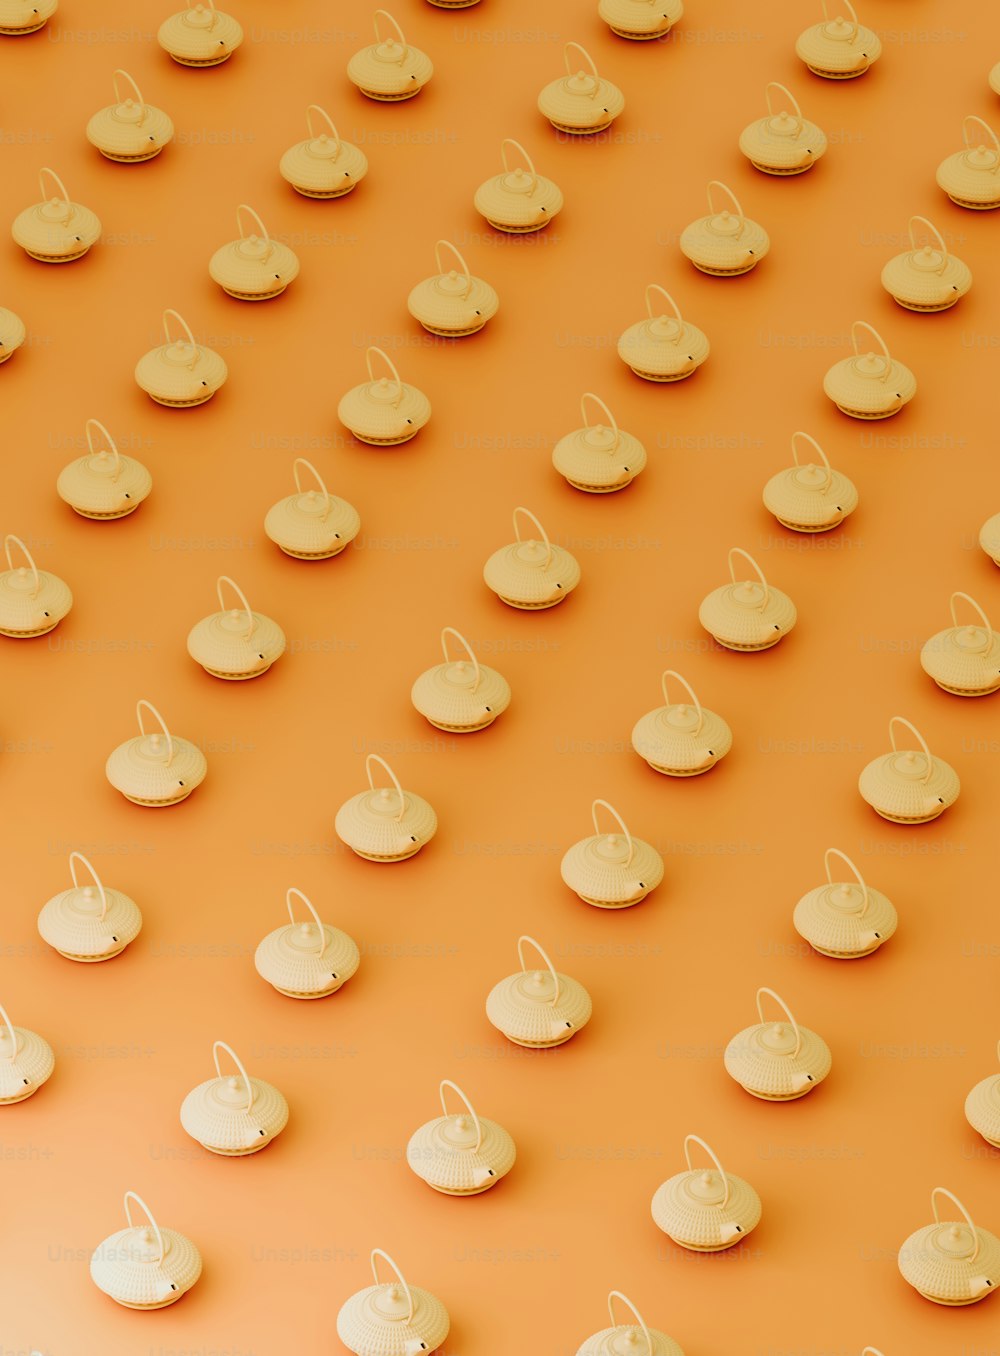 Un grupo de pequeños paraguas blancos sentados encima de una superficie naranja